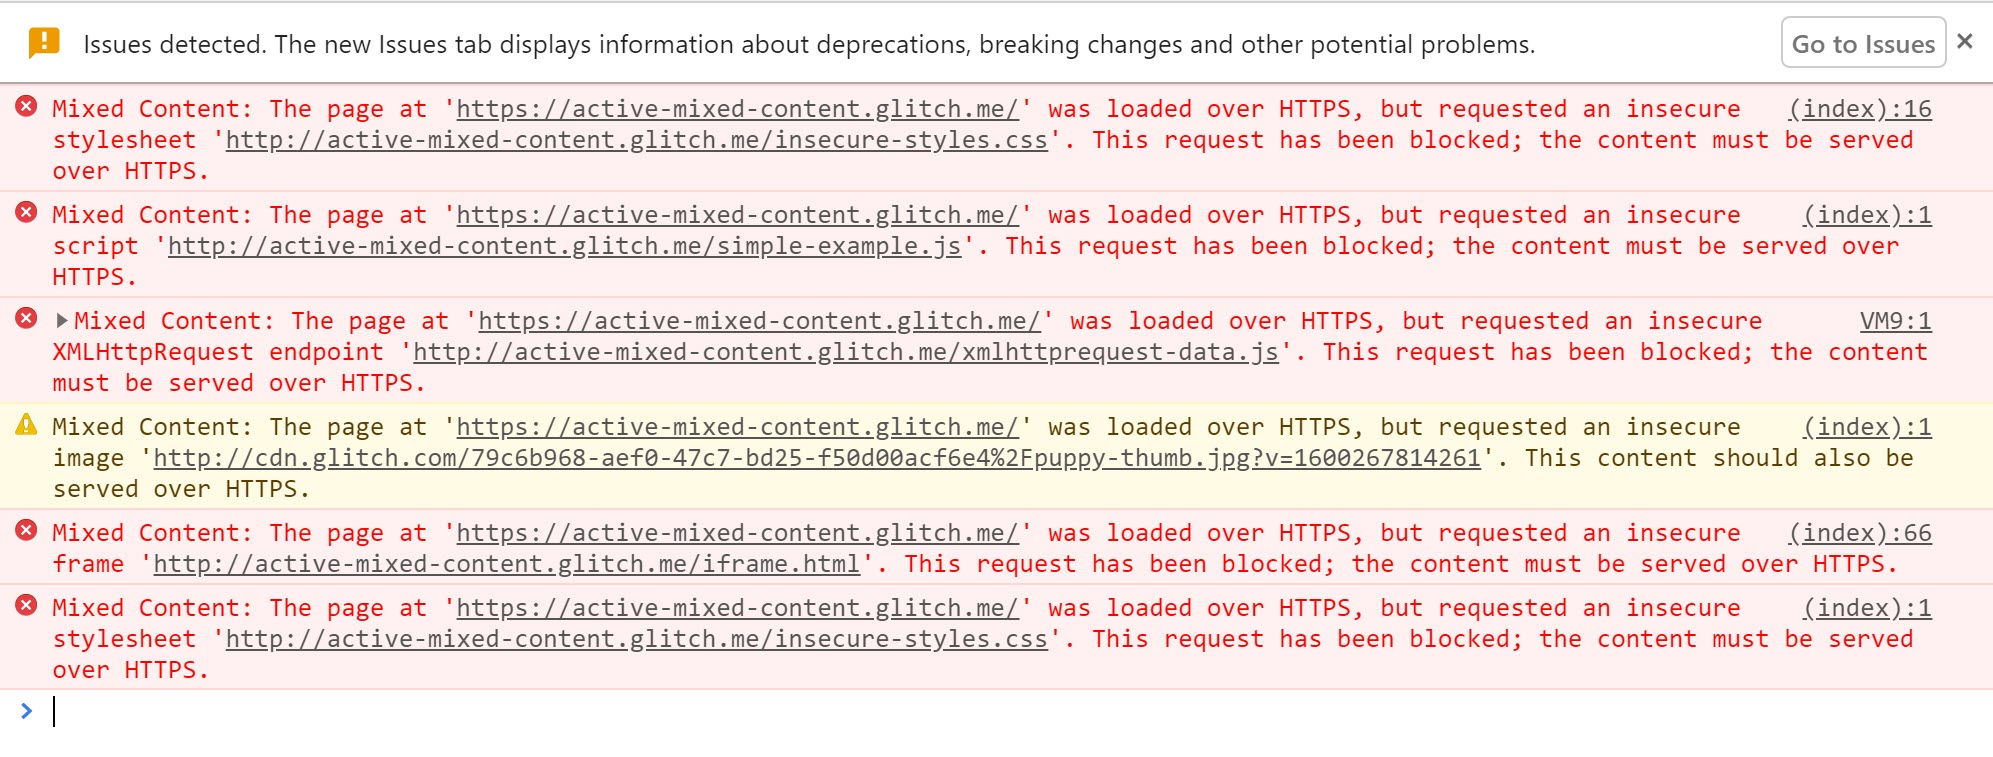 Chrome DevTools показывает предупреждения, отображаемые при блокировке активного смешанного контента.